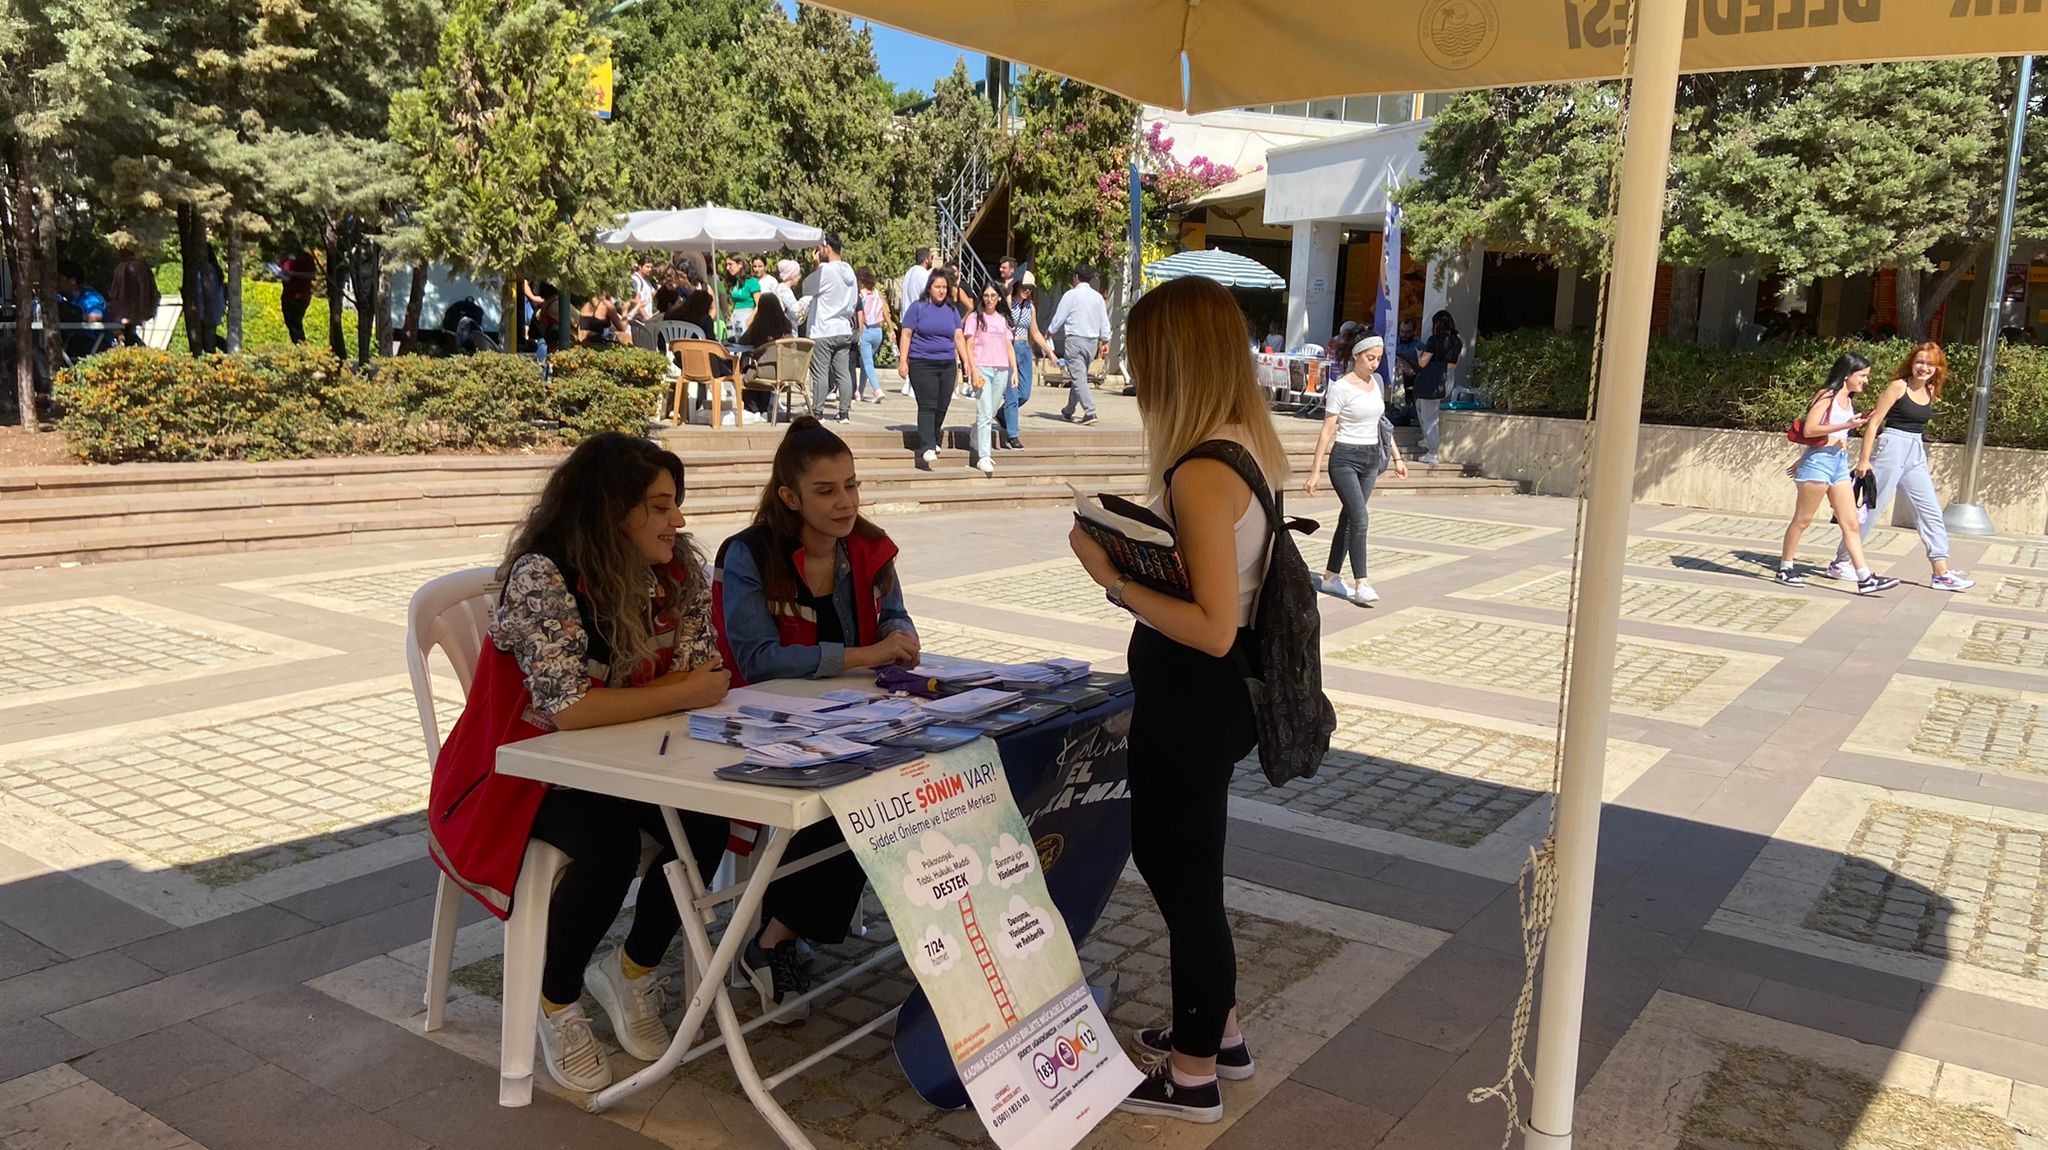 Mersin ŞÖNİM tarafından Mersin Üniversitesi Cumhuriyet alanında "Kadına Yönelik Şiddetle Mücadele" kapsamında stand açılarak Alo183 ve KADES uygulamaları konularında broşür dağıtıldı.